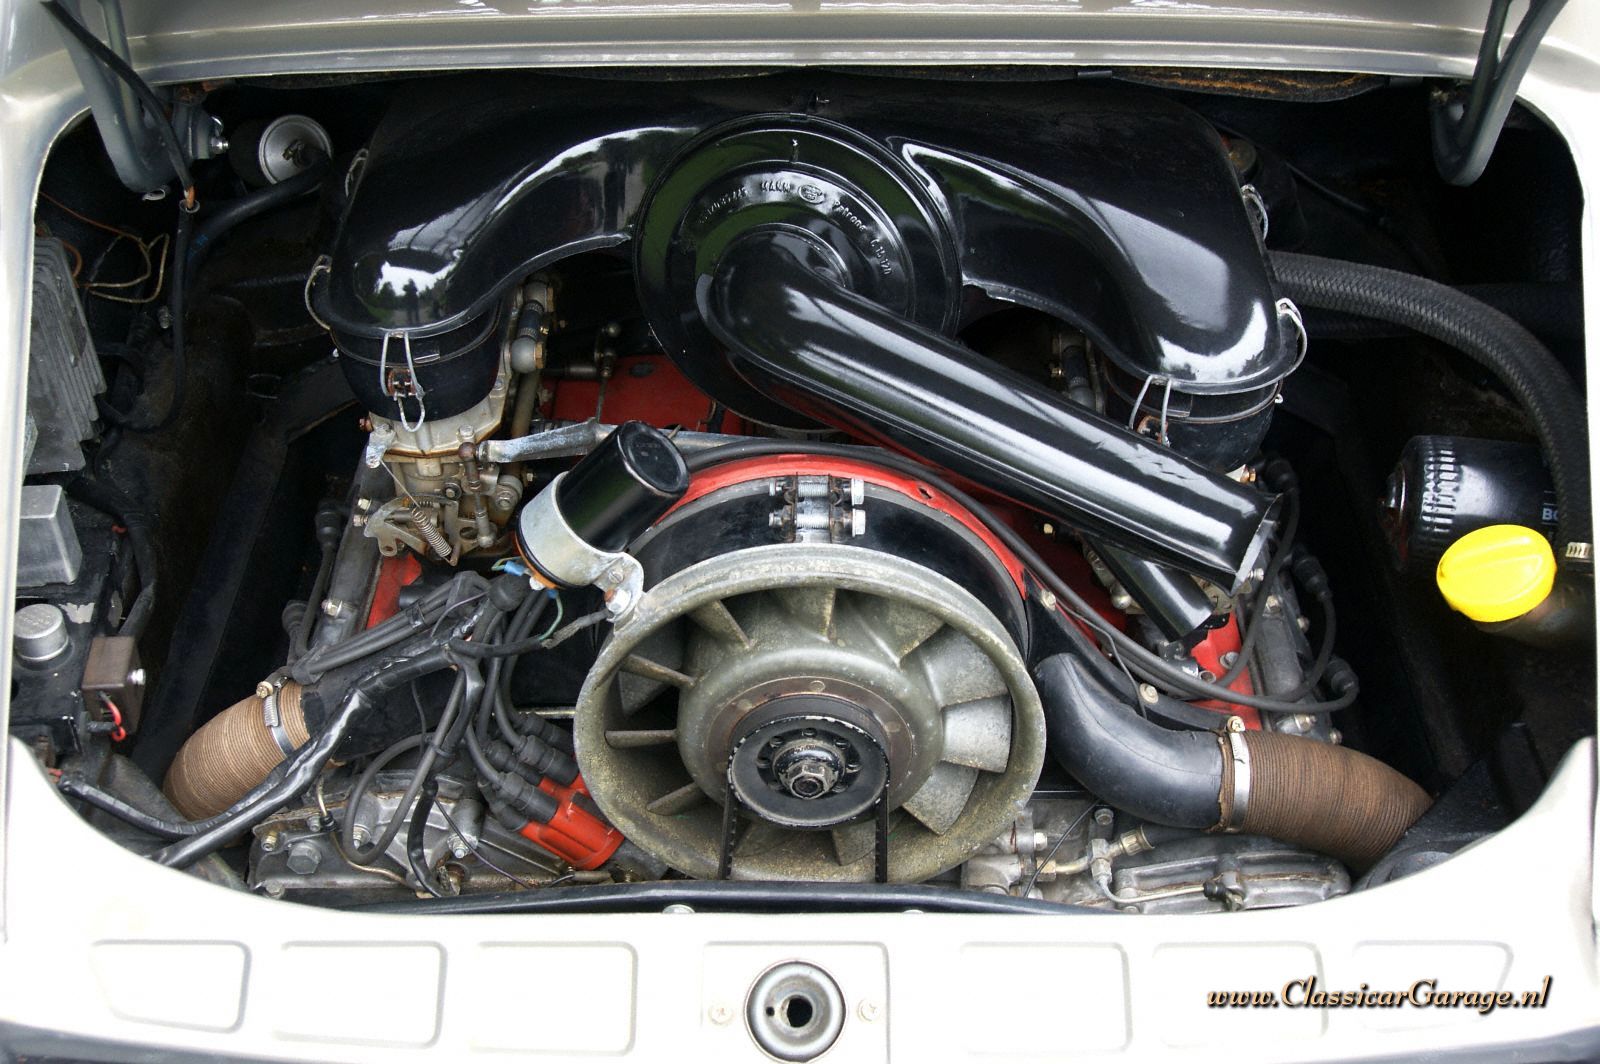 PORSCHE 911 engine